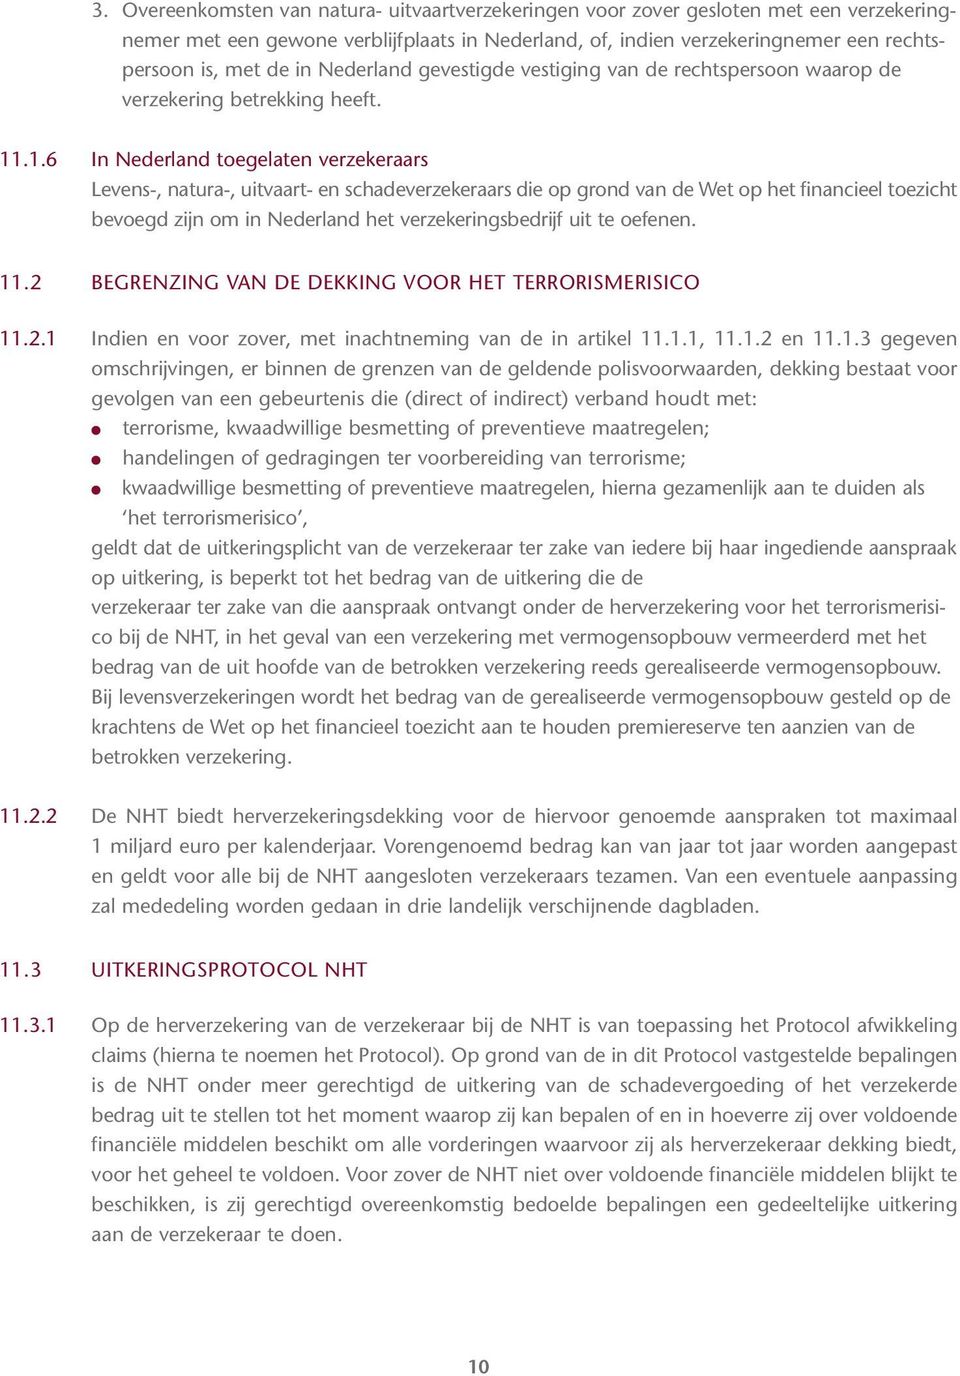 .1.6 In Nederland toegelaten verzekeraars Levens-, natura-, uitvaart- en schadeverzekeraars die op grond van de Wet op het financieel toezicht bevoegd zijn om in Nederland het verzekeringsbedrijf uit